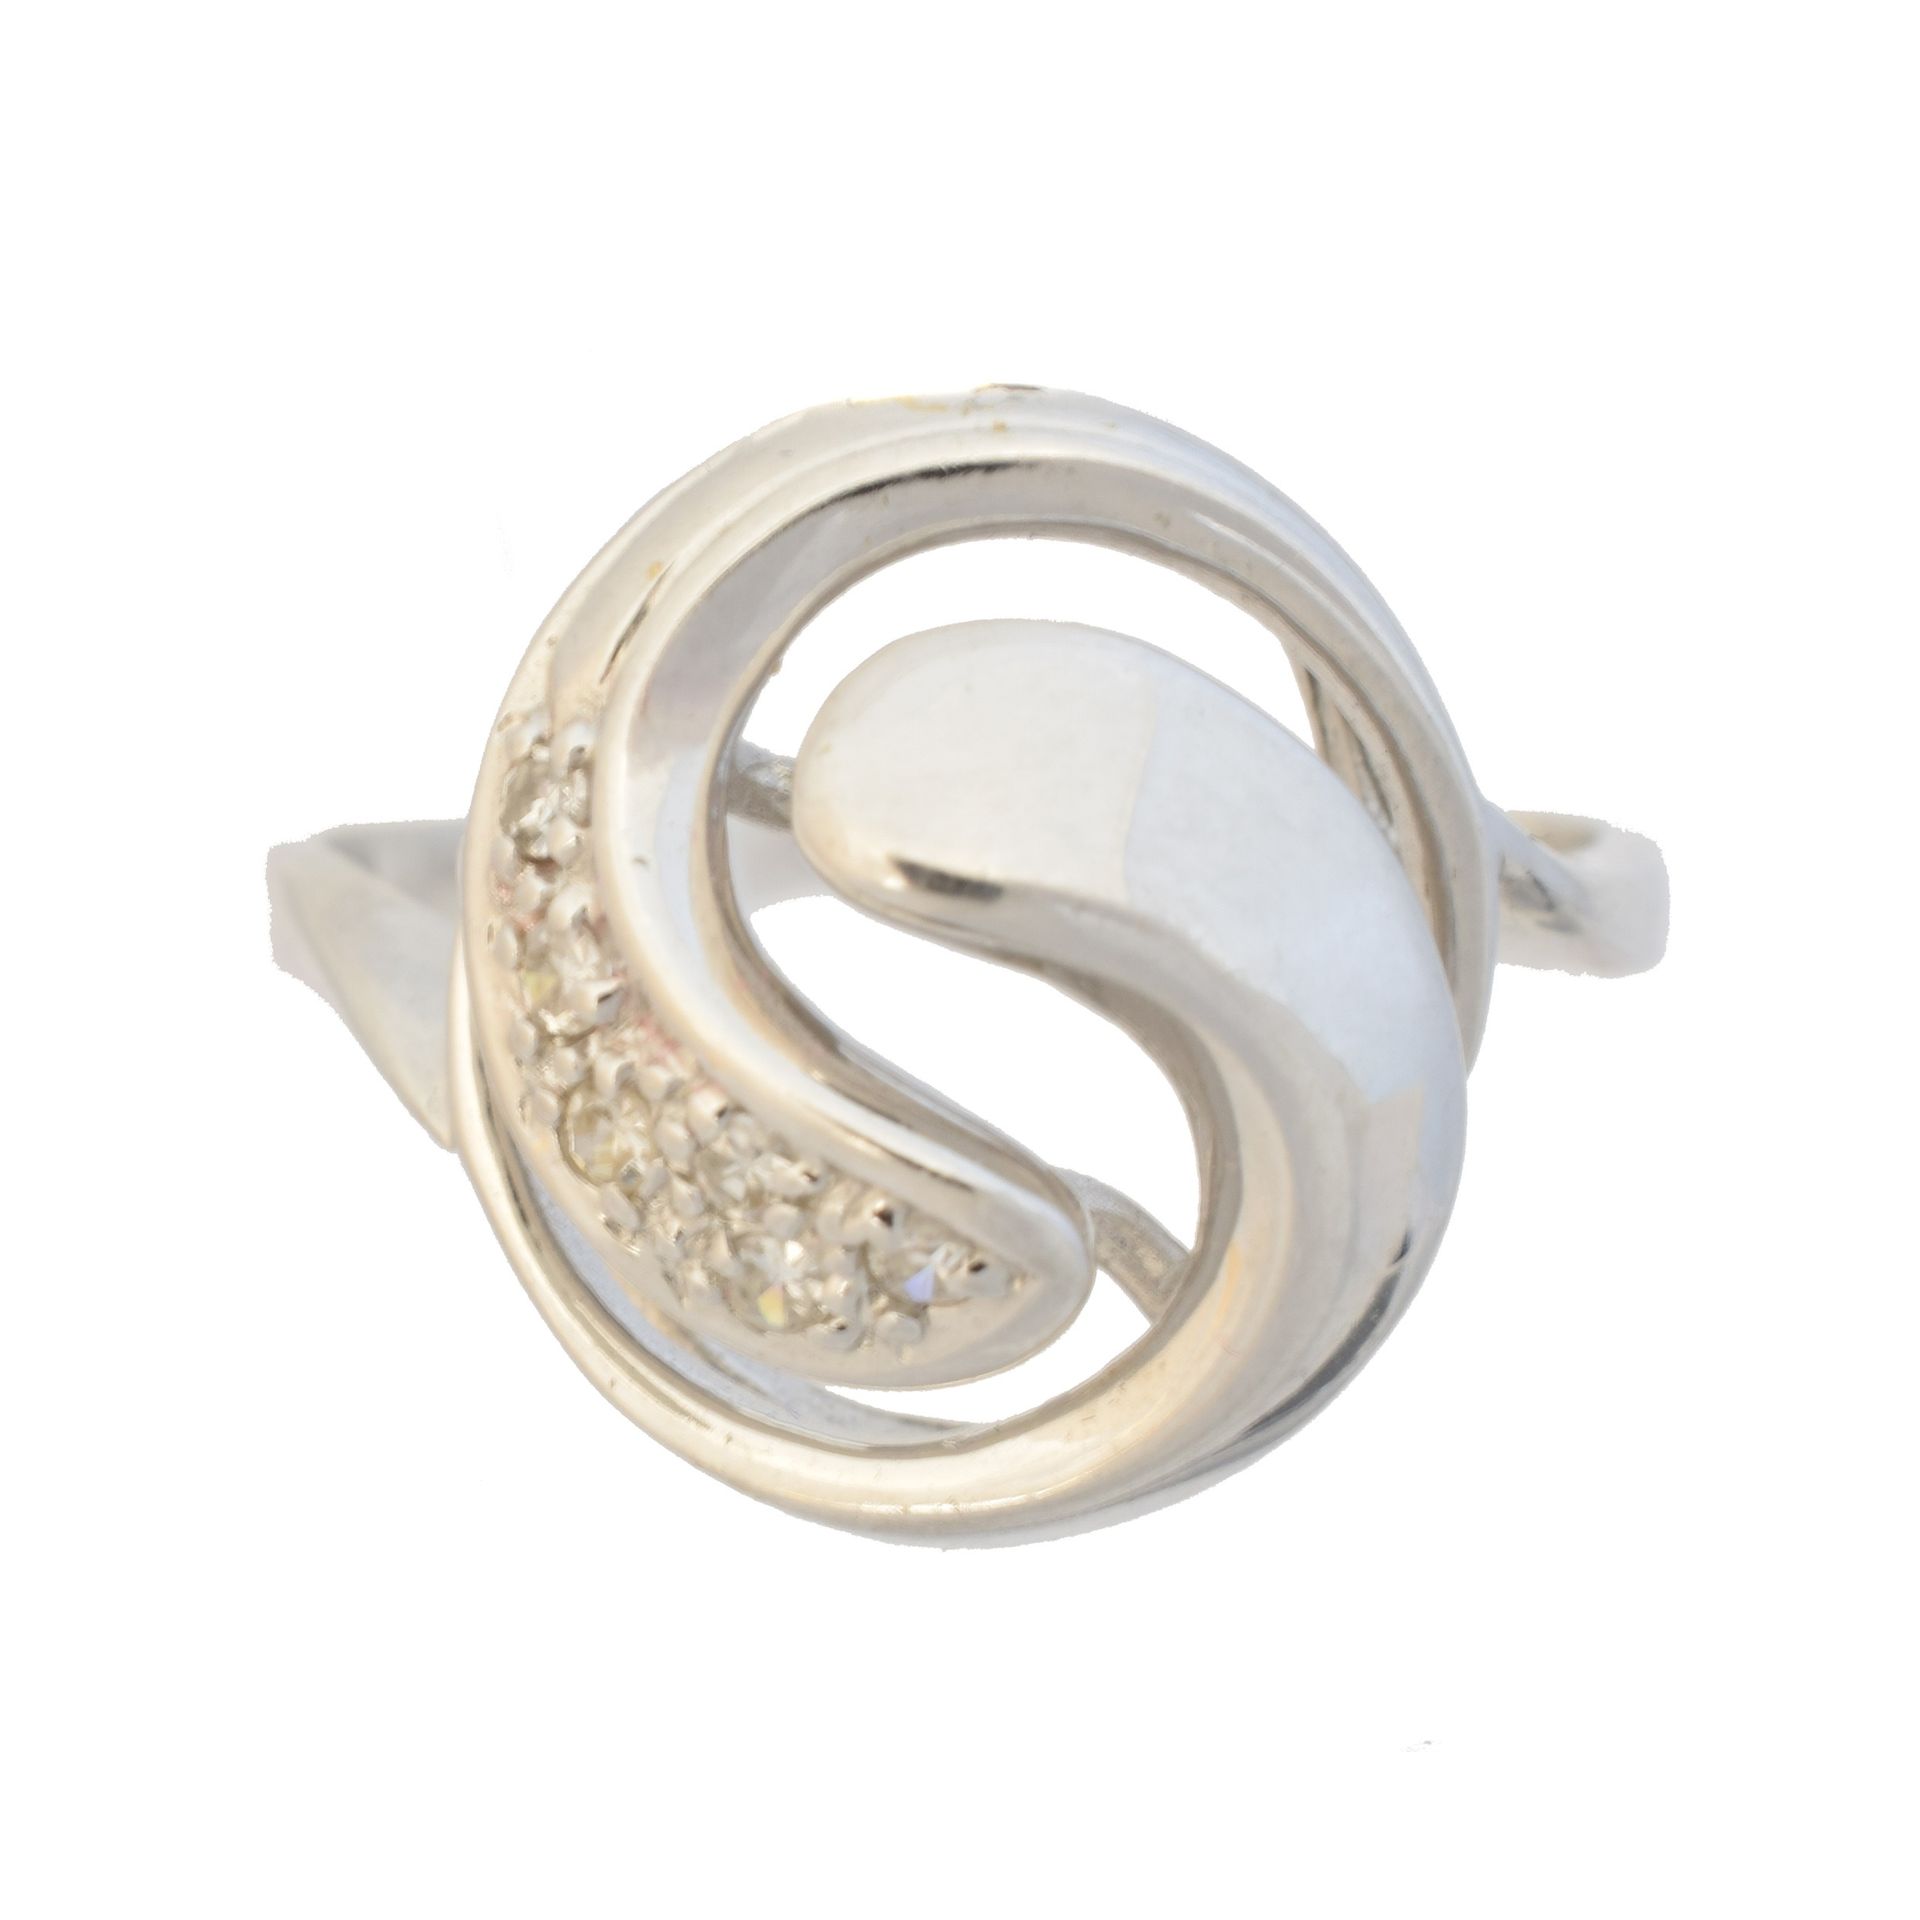 A diamond dress ring, 
Un anello di diamanti, disegnato come una spirale trafora&hellip;